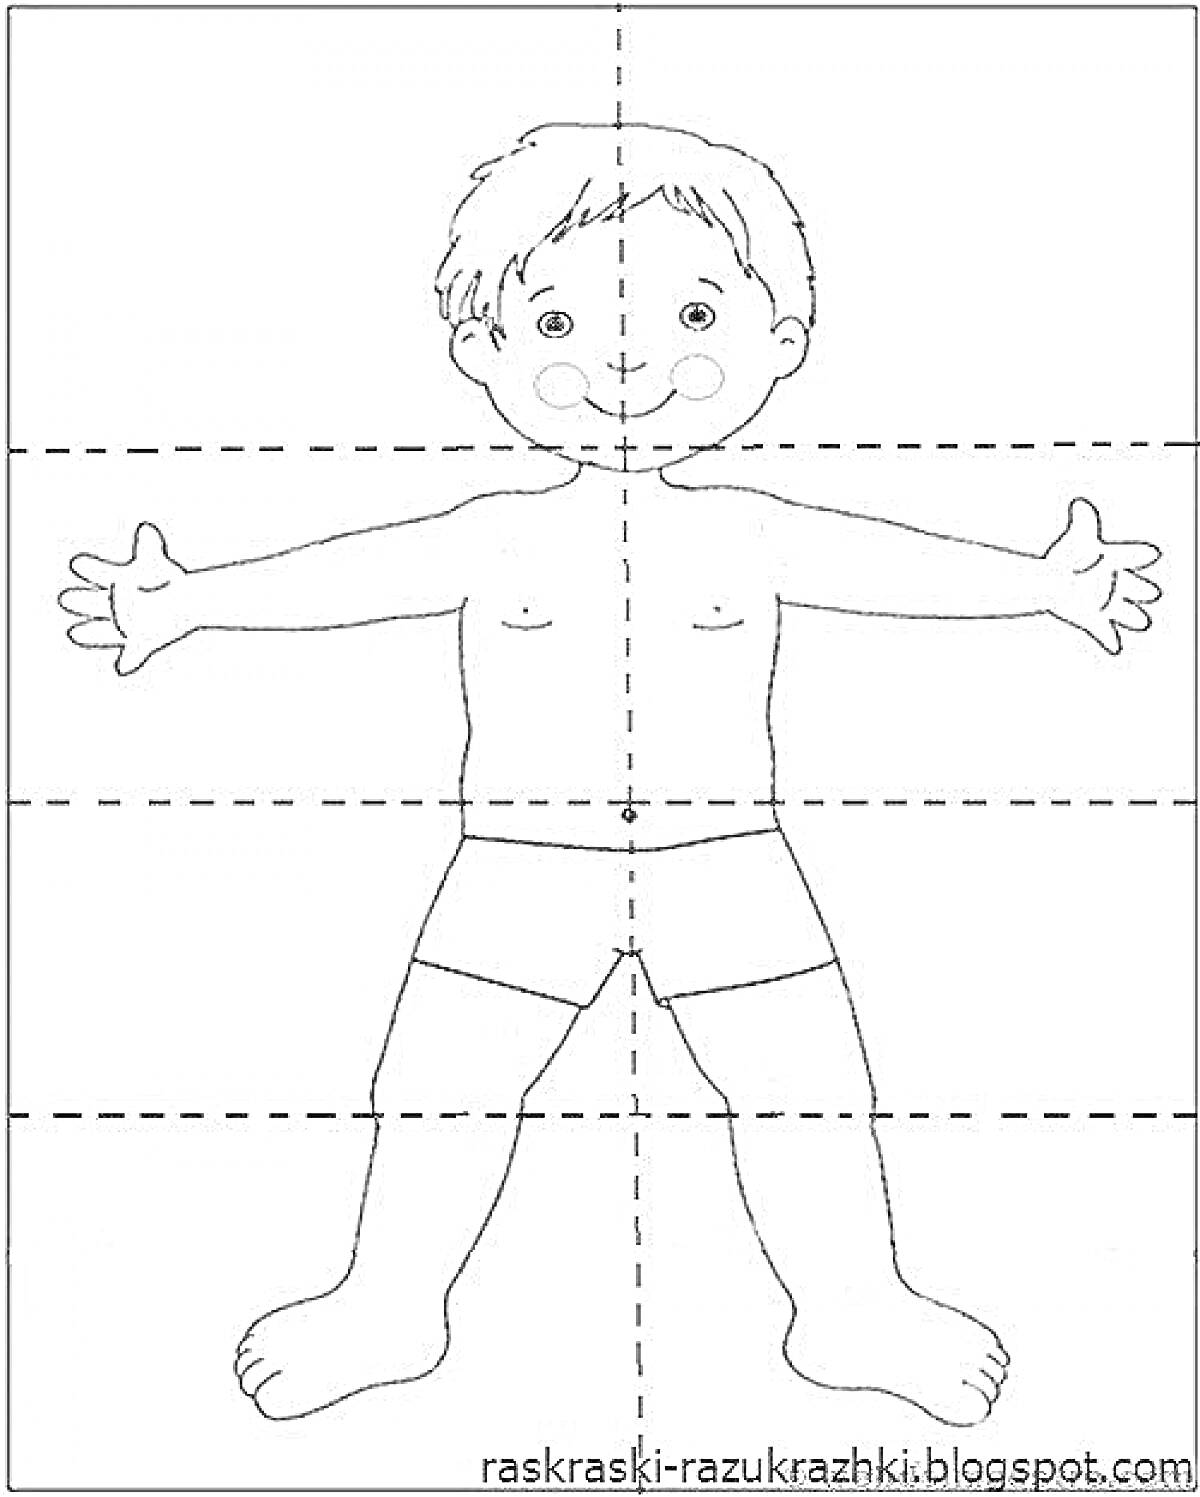 Раскраска с изображением мальчика, с элементами: голова, волосы, глаза, рот, уши, щеки, руки, пальцы, тело, ноги, ступни, трусы.